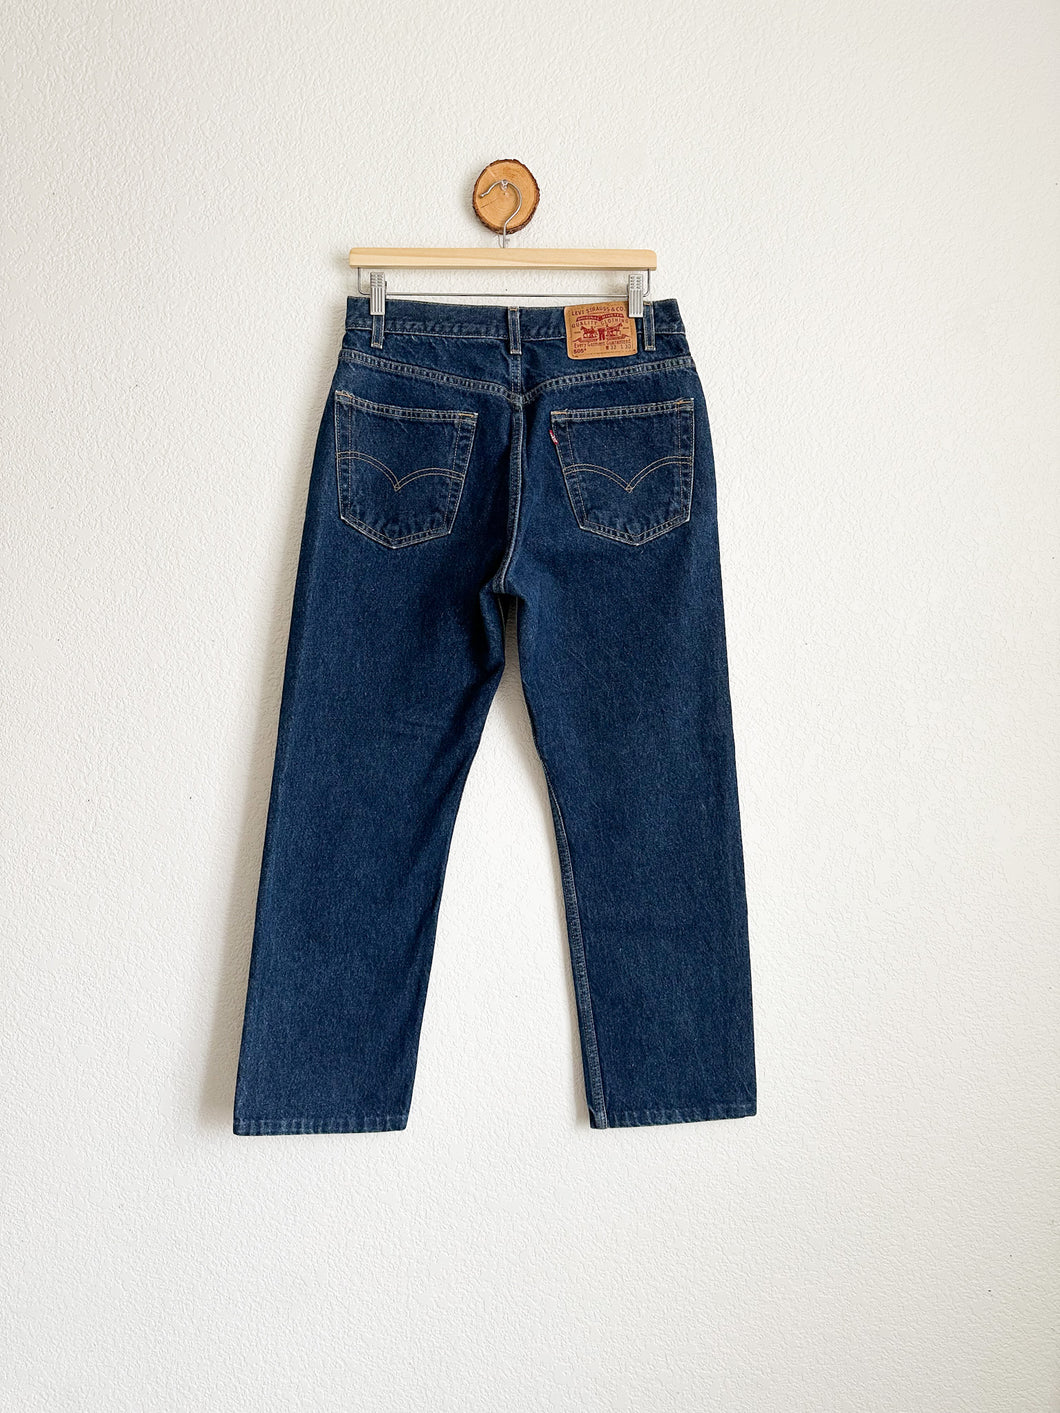 Vintage Levi's 505 Jeans - 30.5